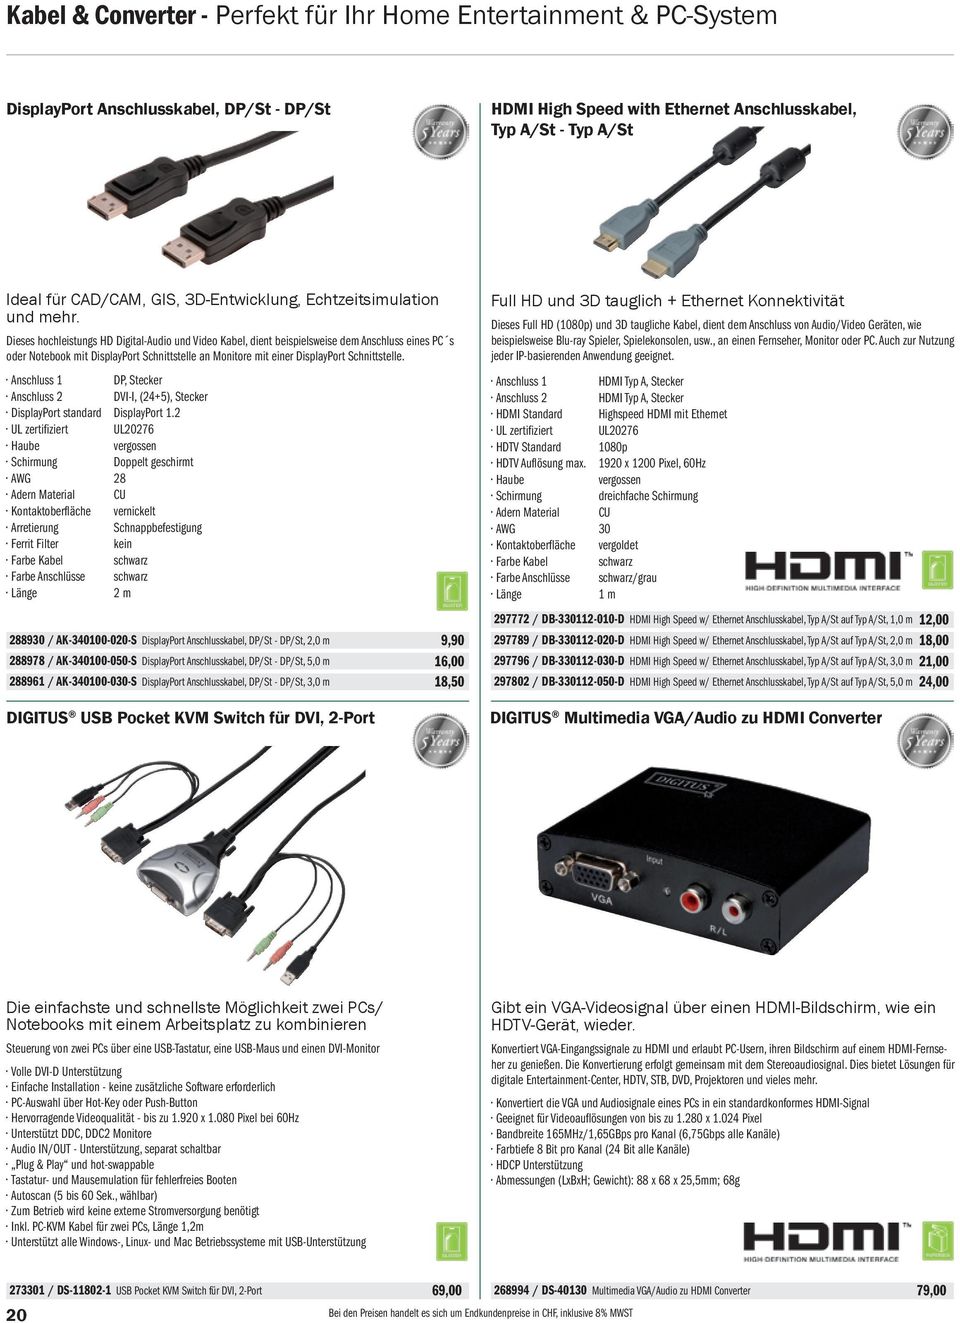 Dieses hochleistungs HD Digital-Audio und Video Kabel, dient beispielsweise dem Anschluss eines PC s oder Notebook mit DisplayPort Schnittstelle an Monitore mit einer DisplayPort Schnittstelle.